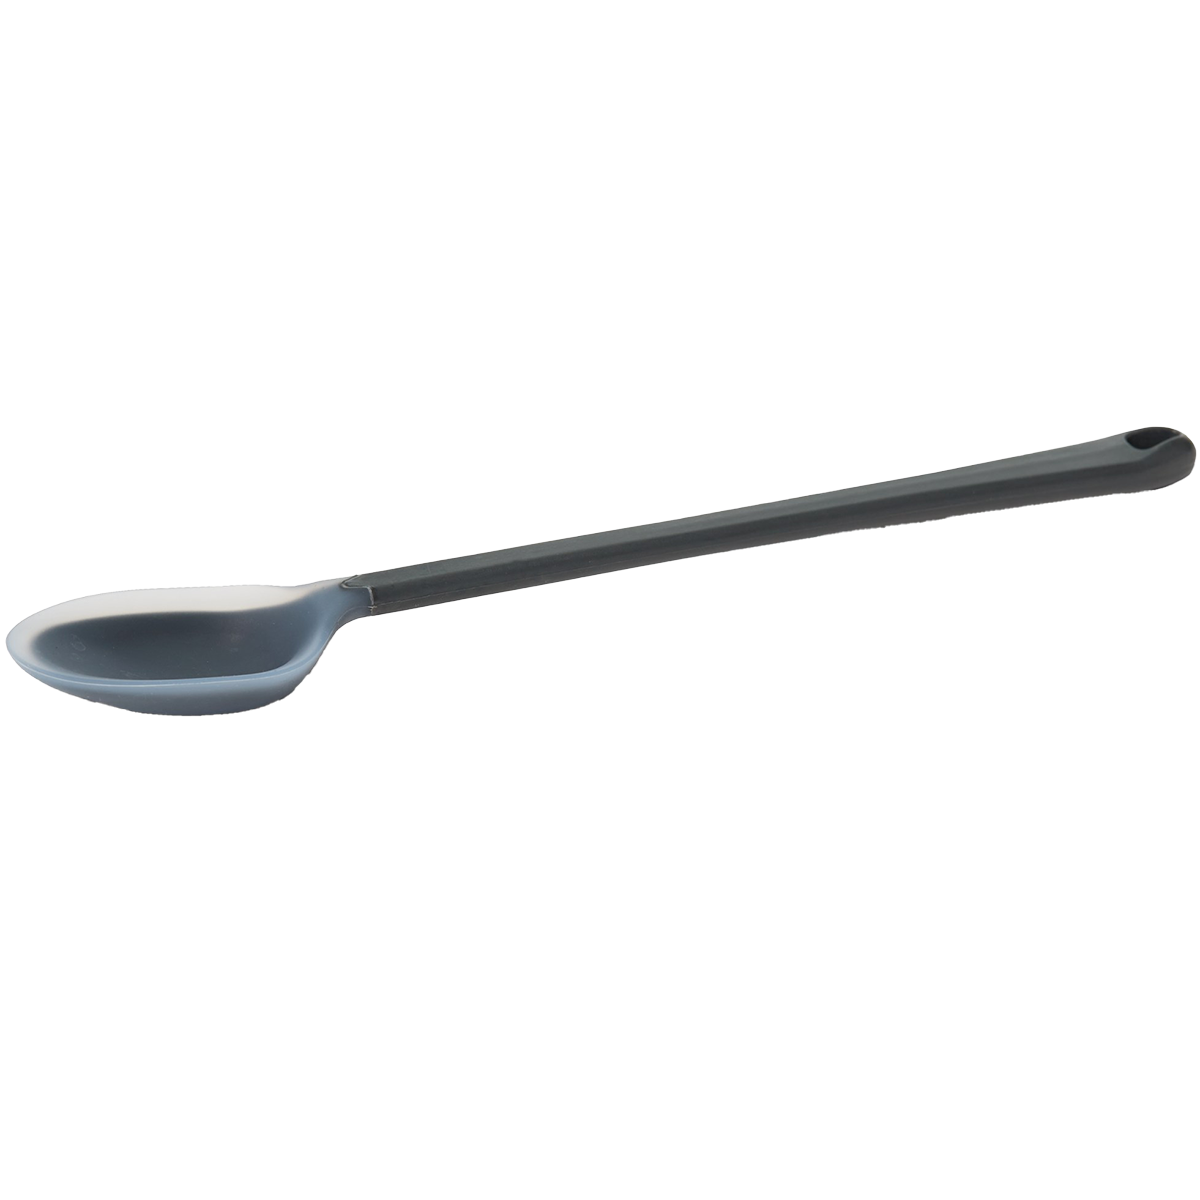 Essential Spoon- Long alternate view